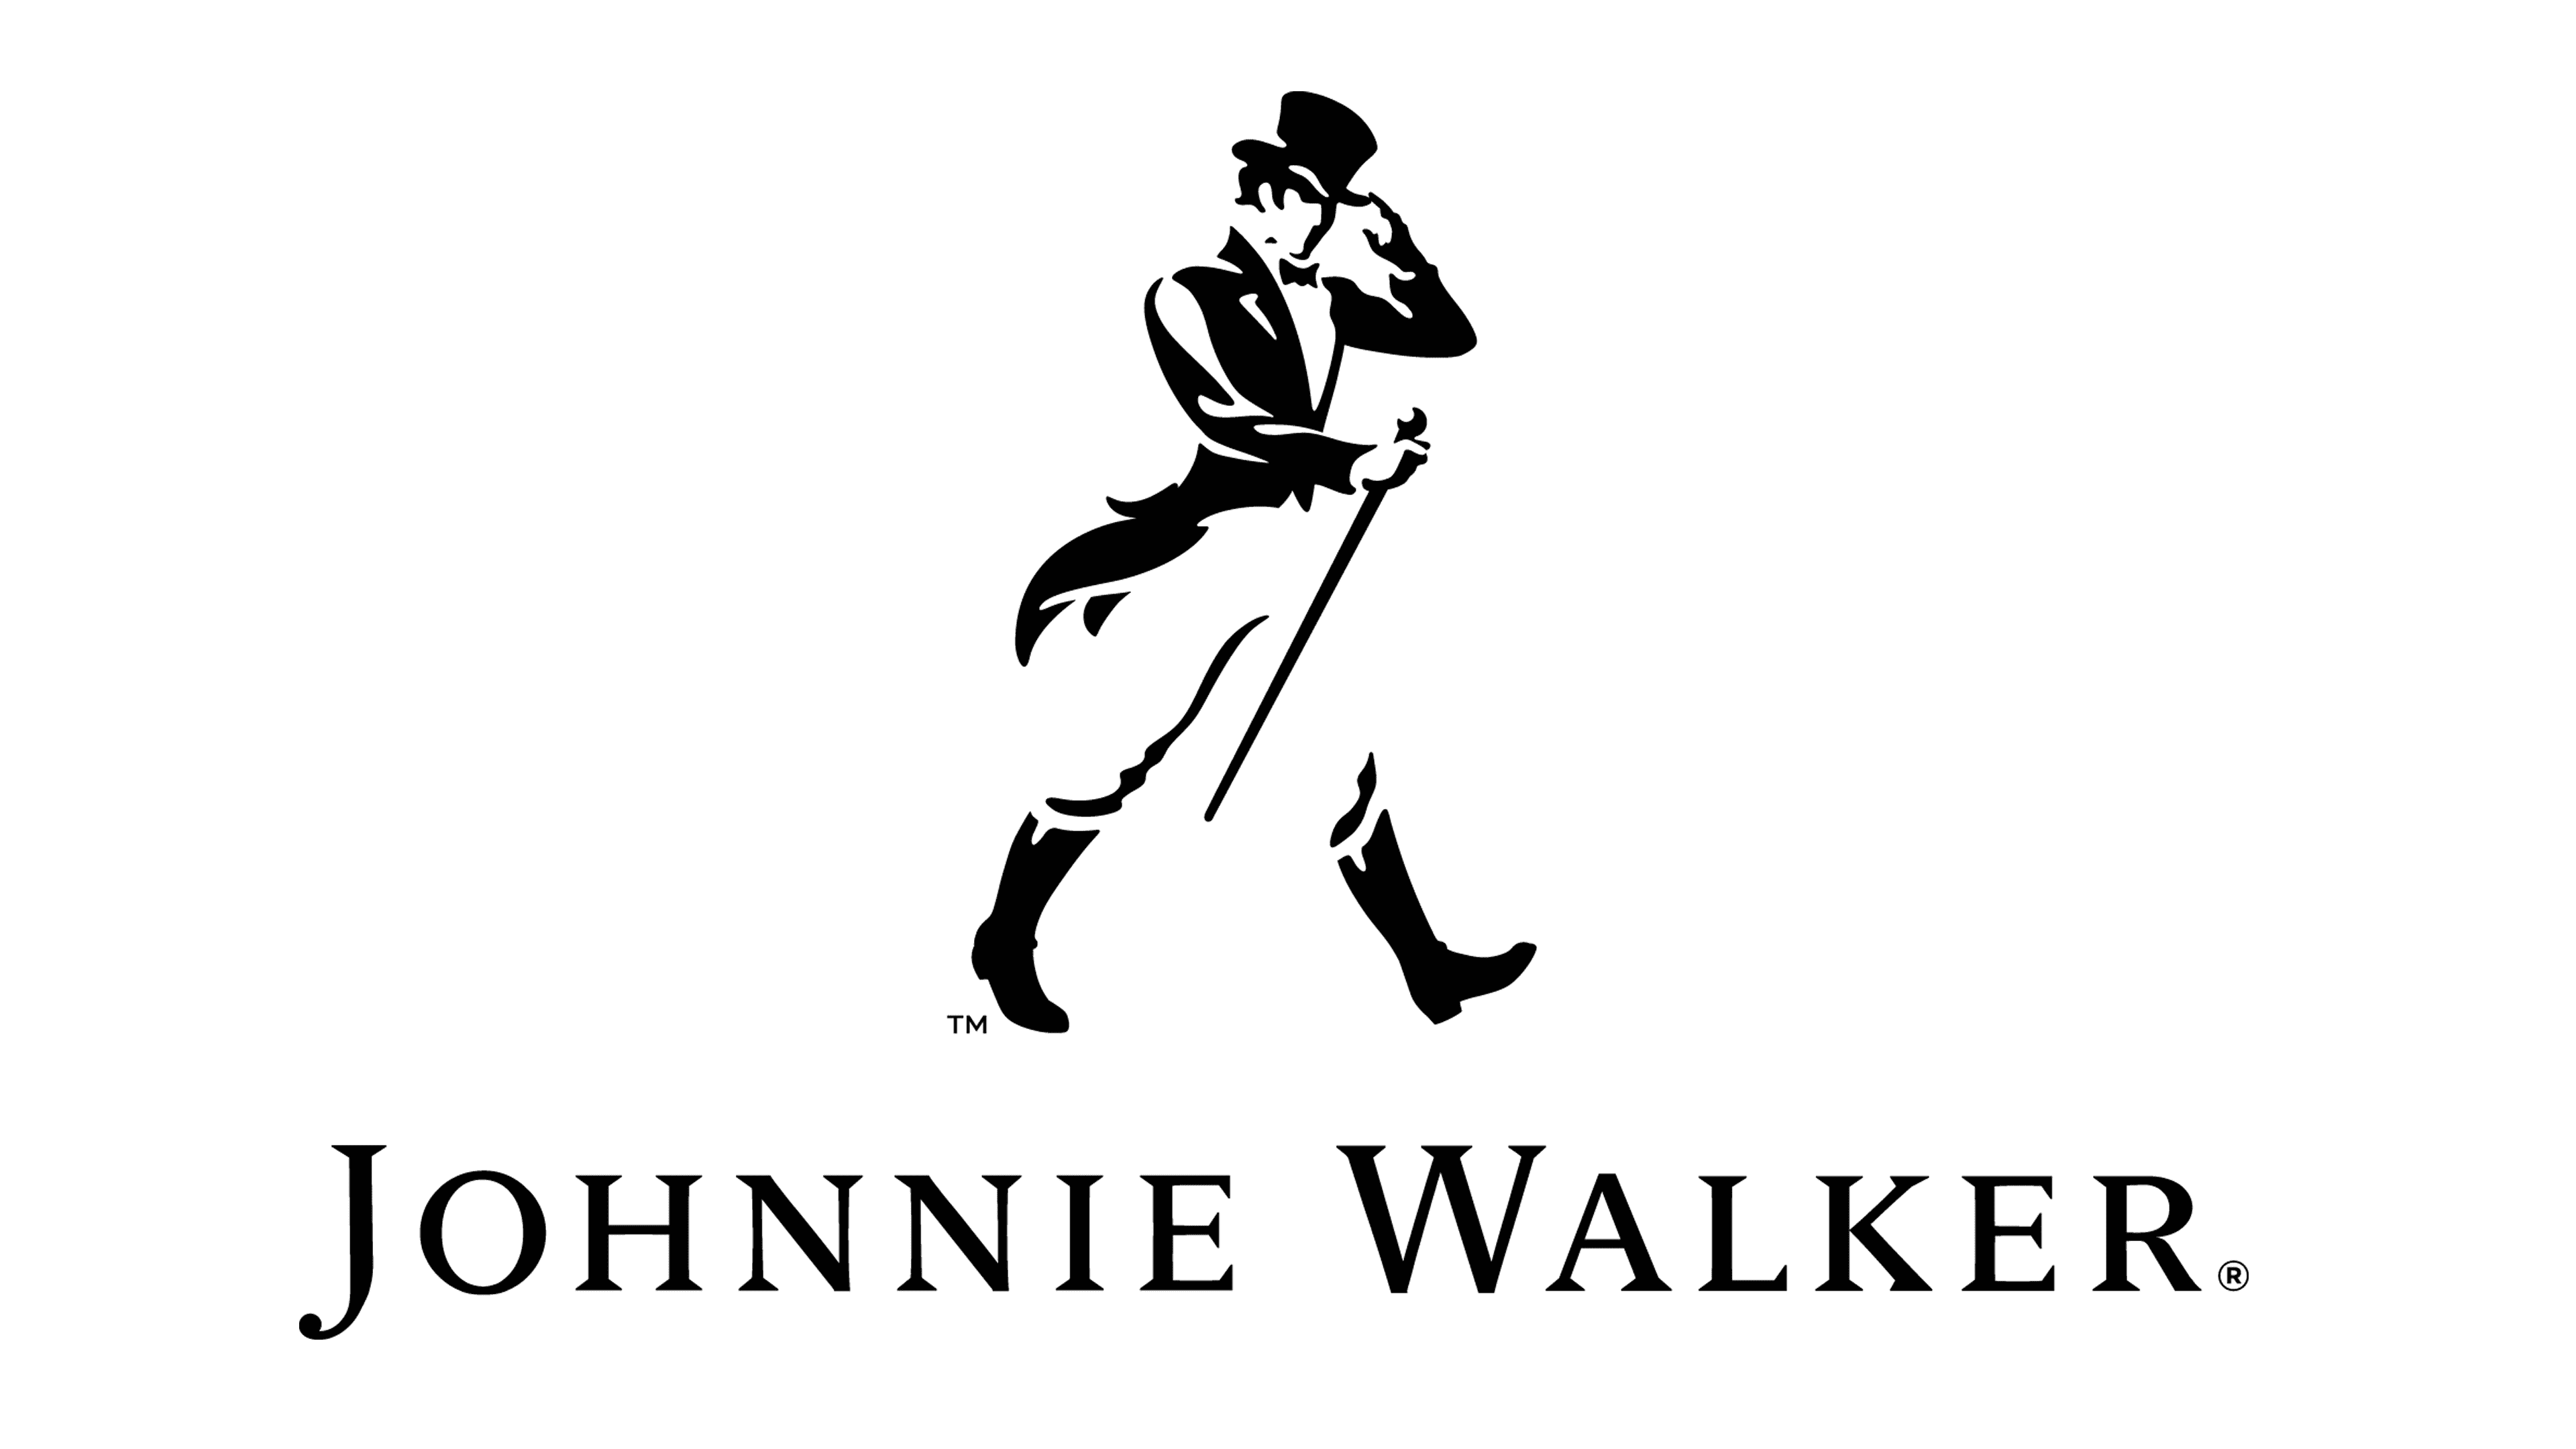 Johnnie Walker Logo Transparent Image